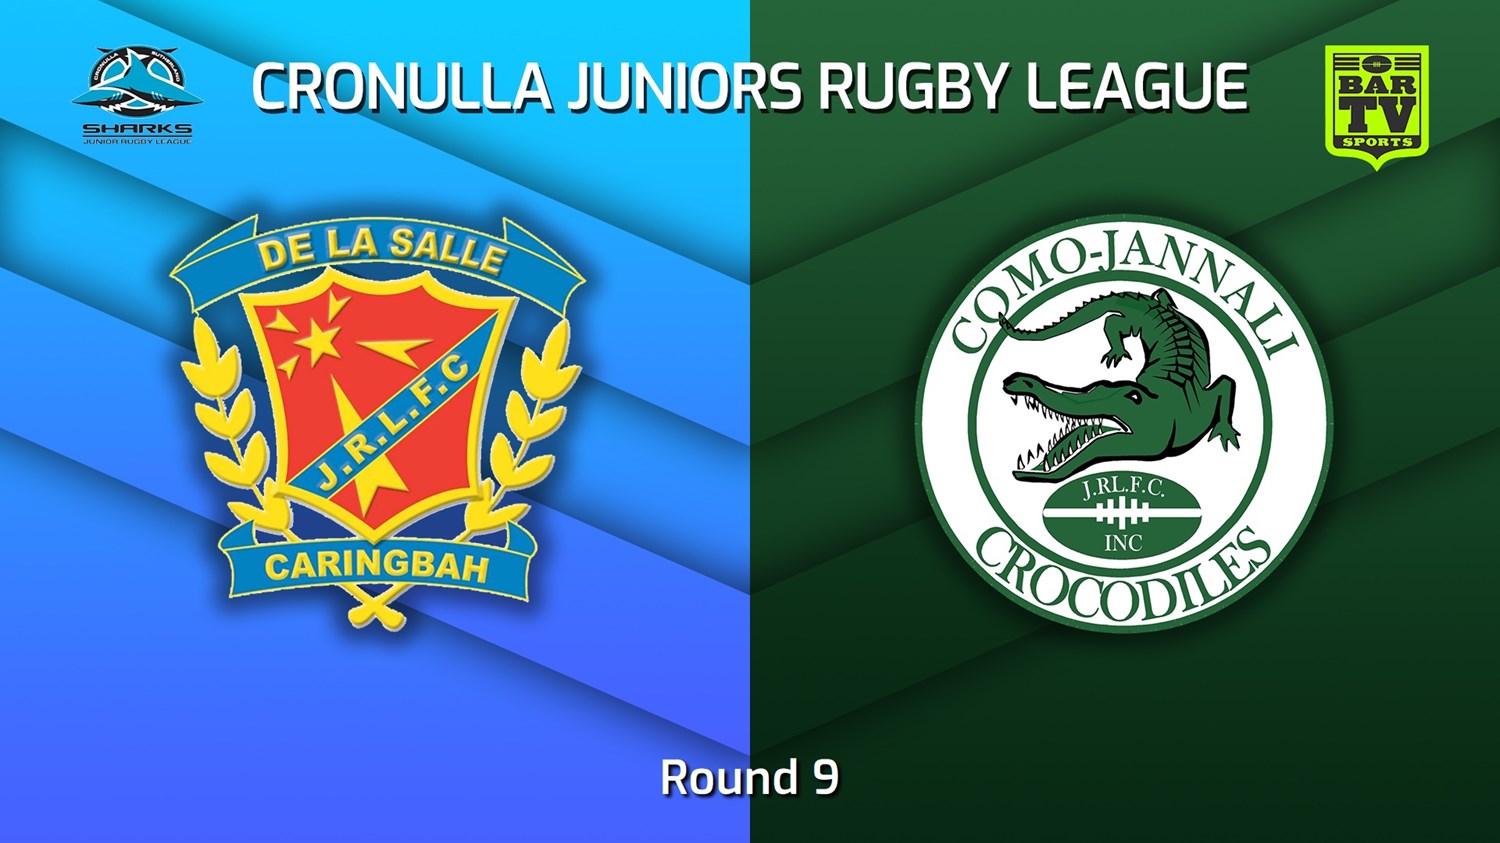 230618-Cronulla Juniors Round 9 - U13 Gold Blues Tag - De La Salle v Como Jannali Crocodiles Minigame Slate Image